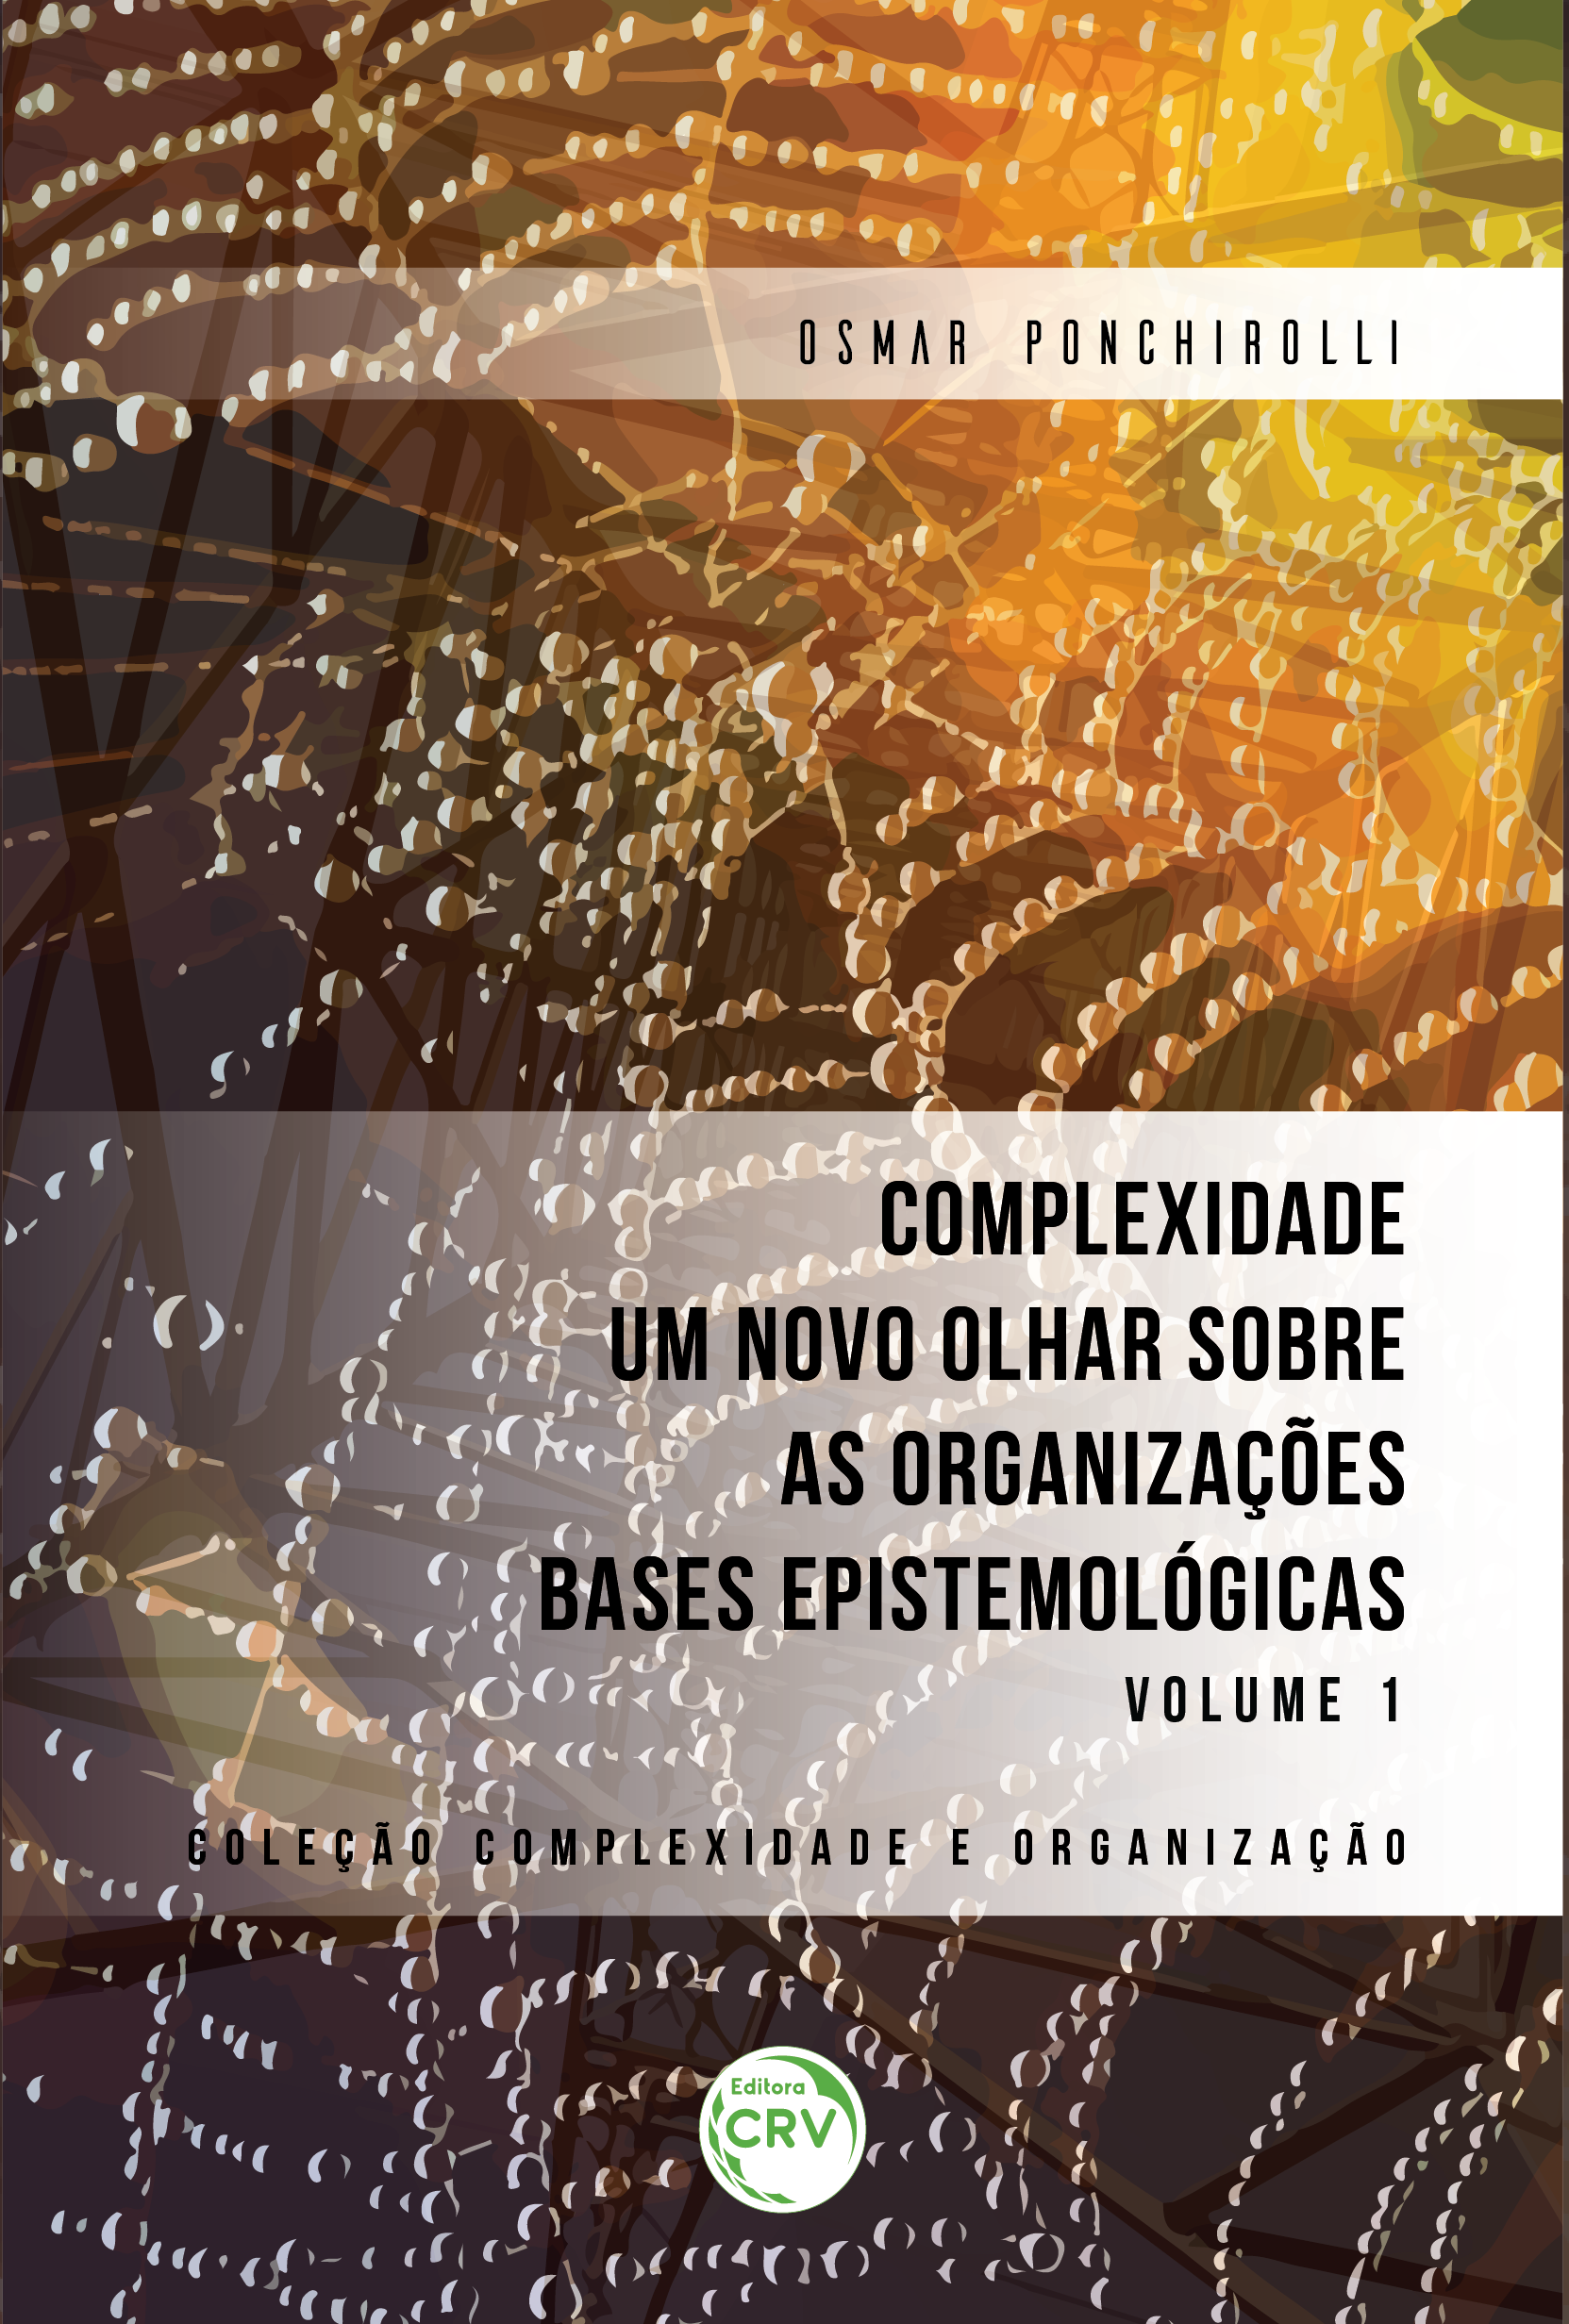 Capa do livro: COMPLEXIDADE UM NOVO OLHAR SOBRE AS ORGANIZAÇÕES BASES EPISTEMOLÓGICAS VOLUME I <br>COLEÇÃO COMPLEXIDADE E ORGANIZAÇÃO